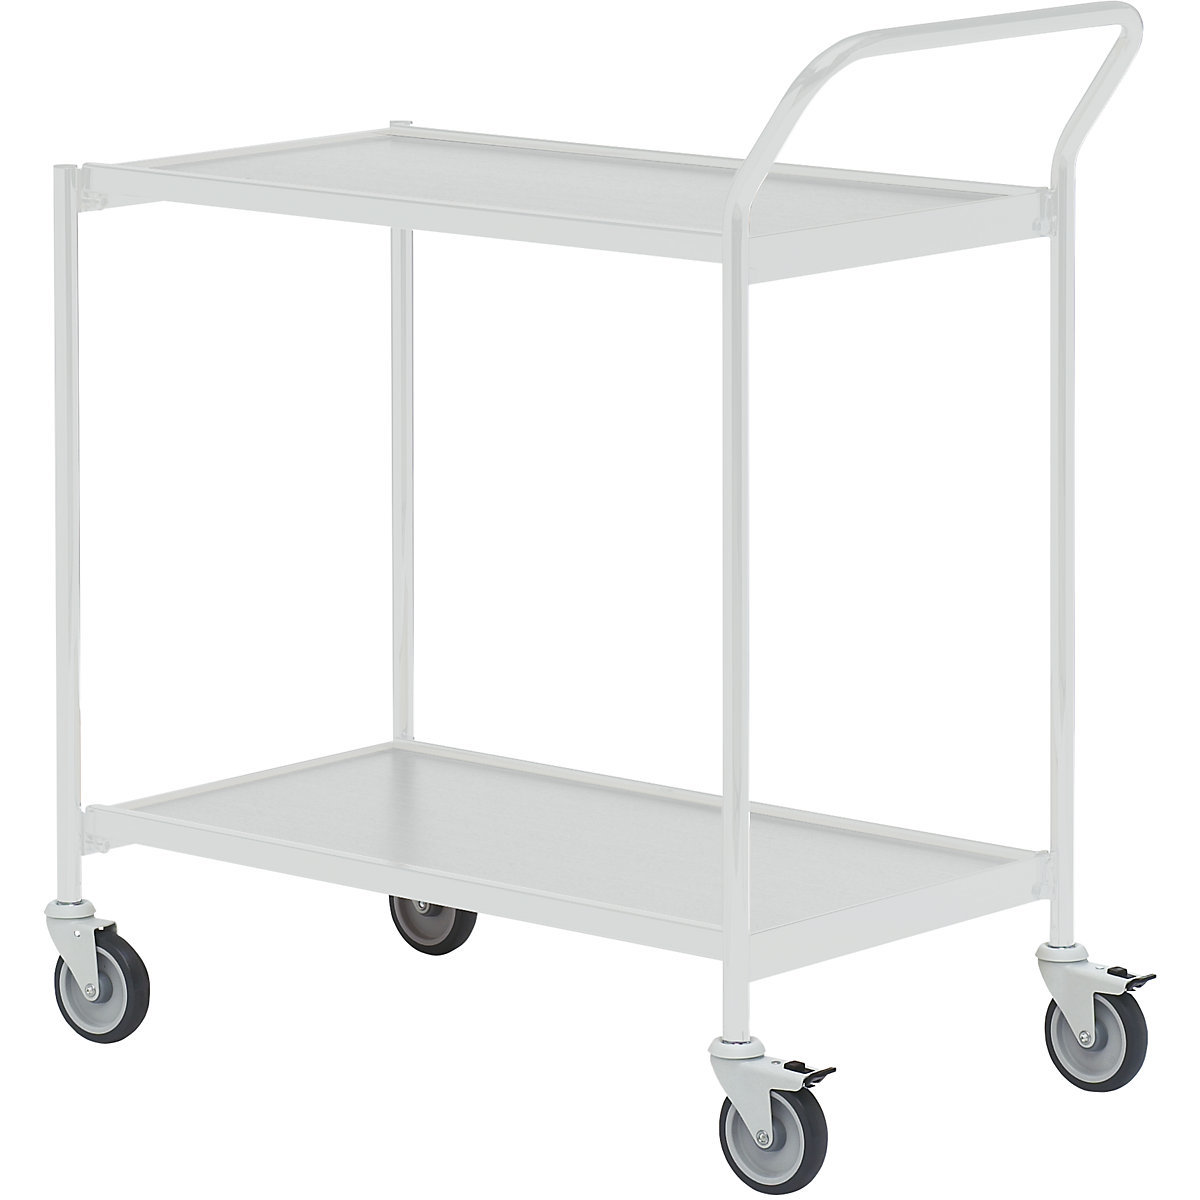 Stolový vozík – HelgeNyberg, 2 poschodia, d x š 800 x 420 mm, šedá/šedá, od 5 ks-33